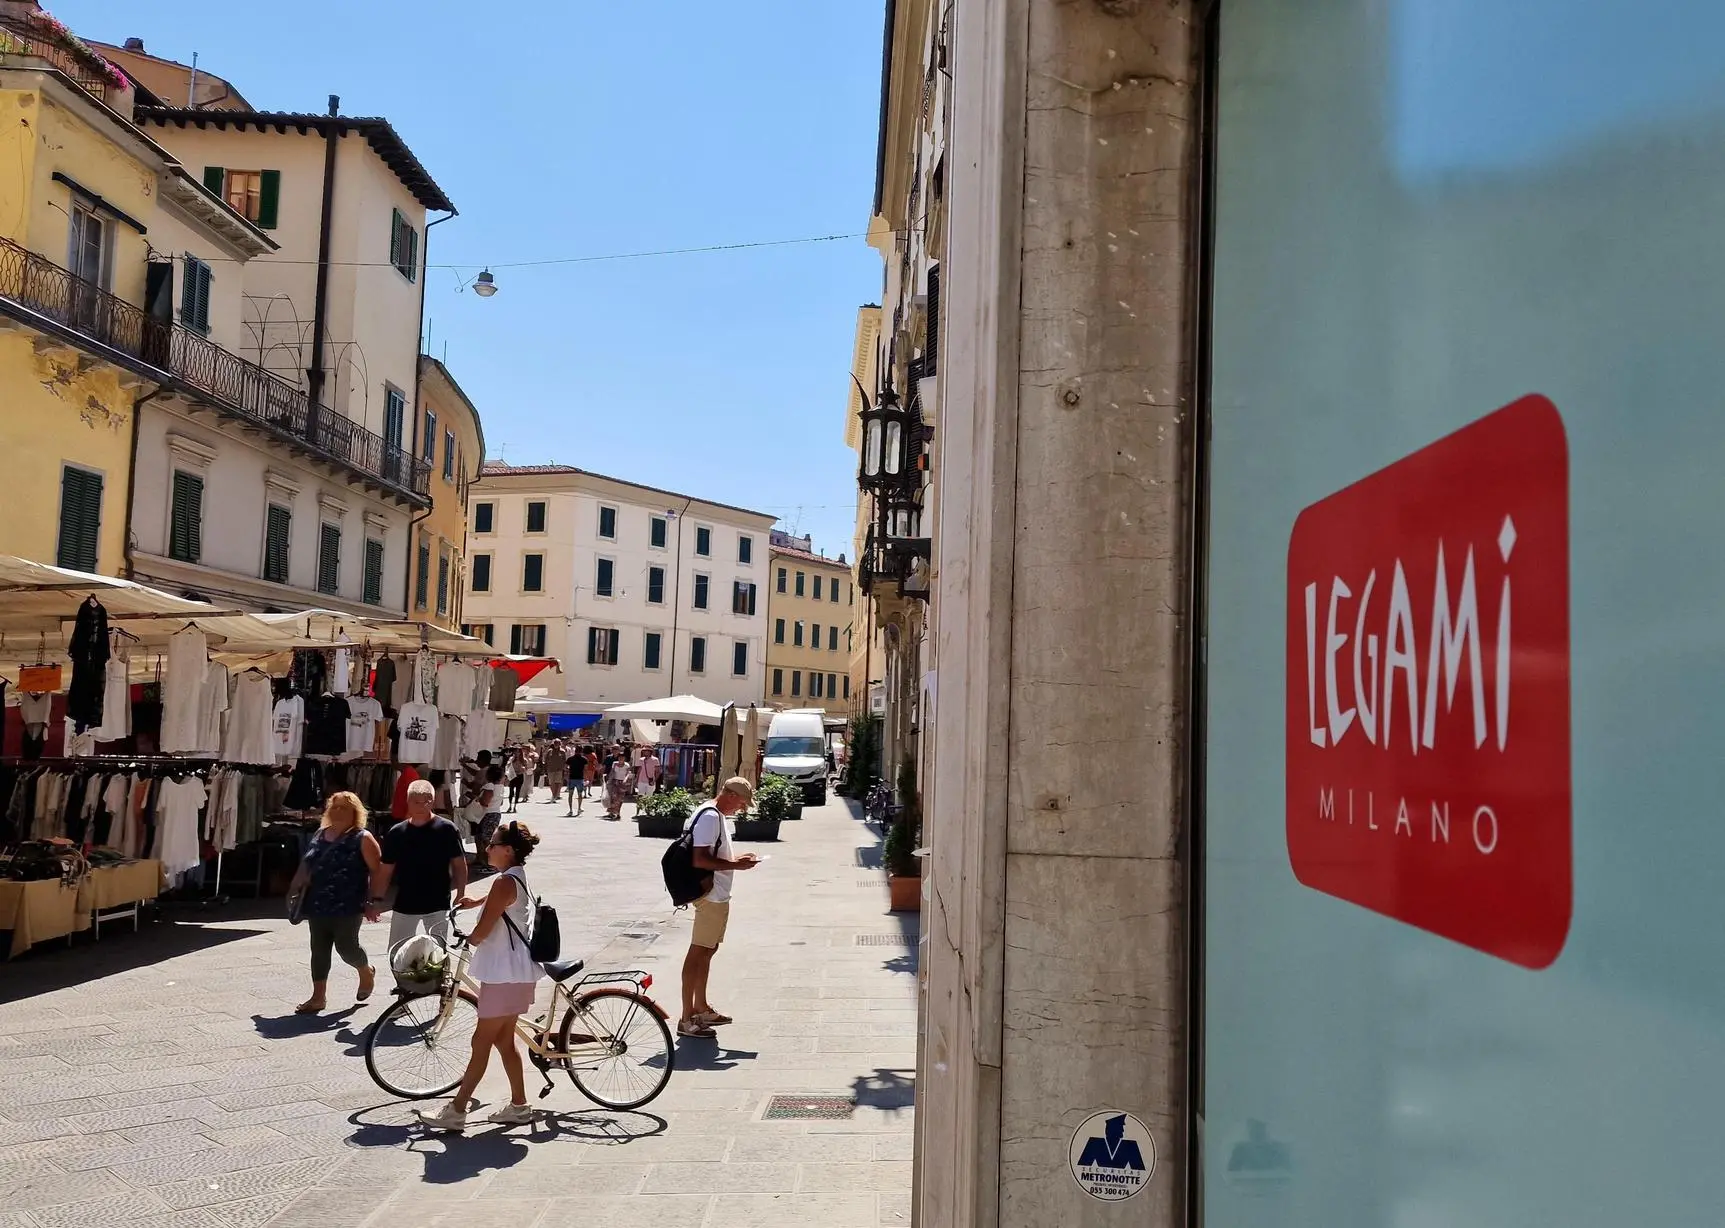 Livorno, via Grande: apre la nuova boutique Legami